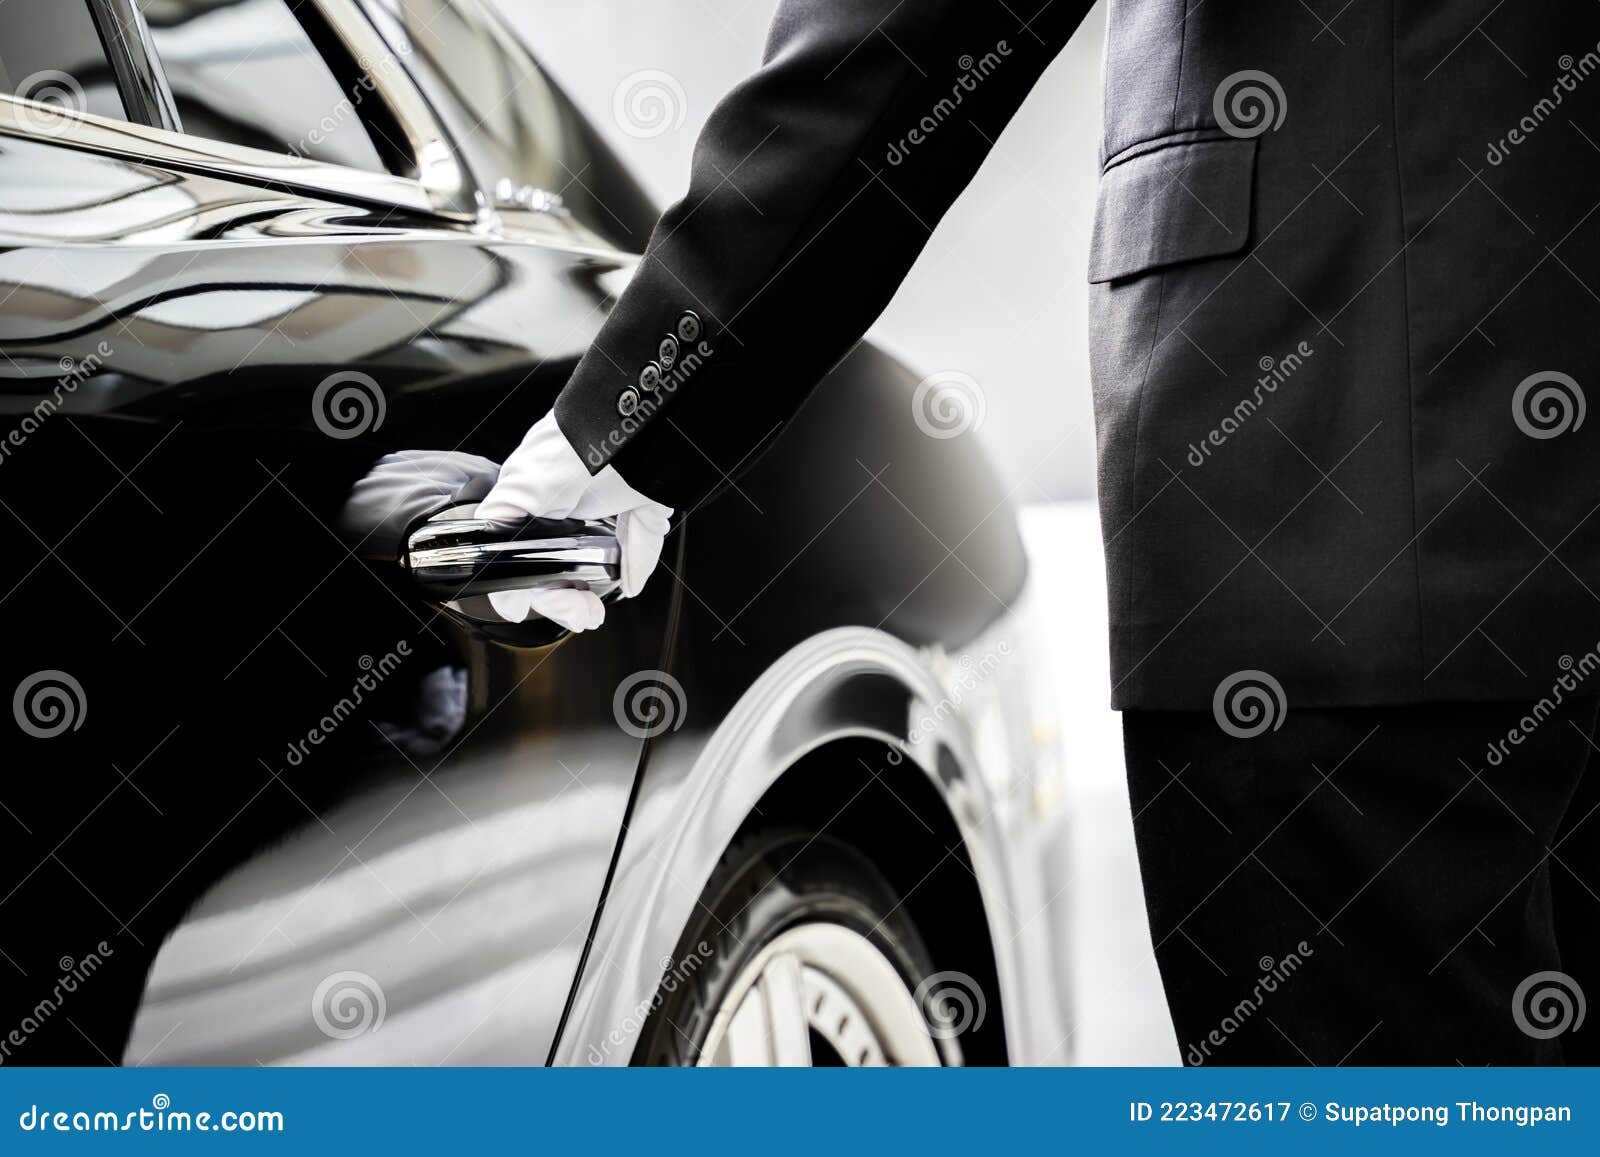 chauffeur opening car door